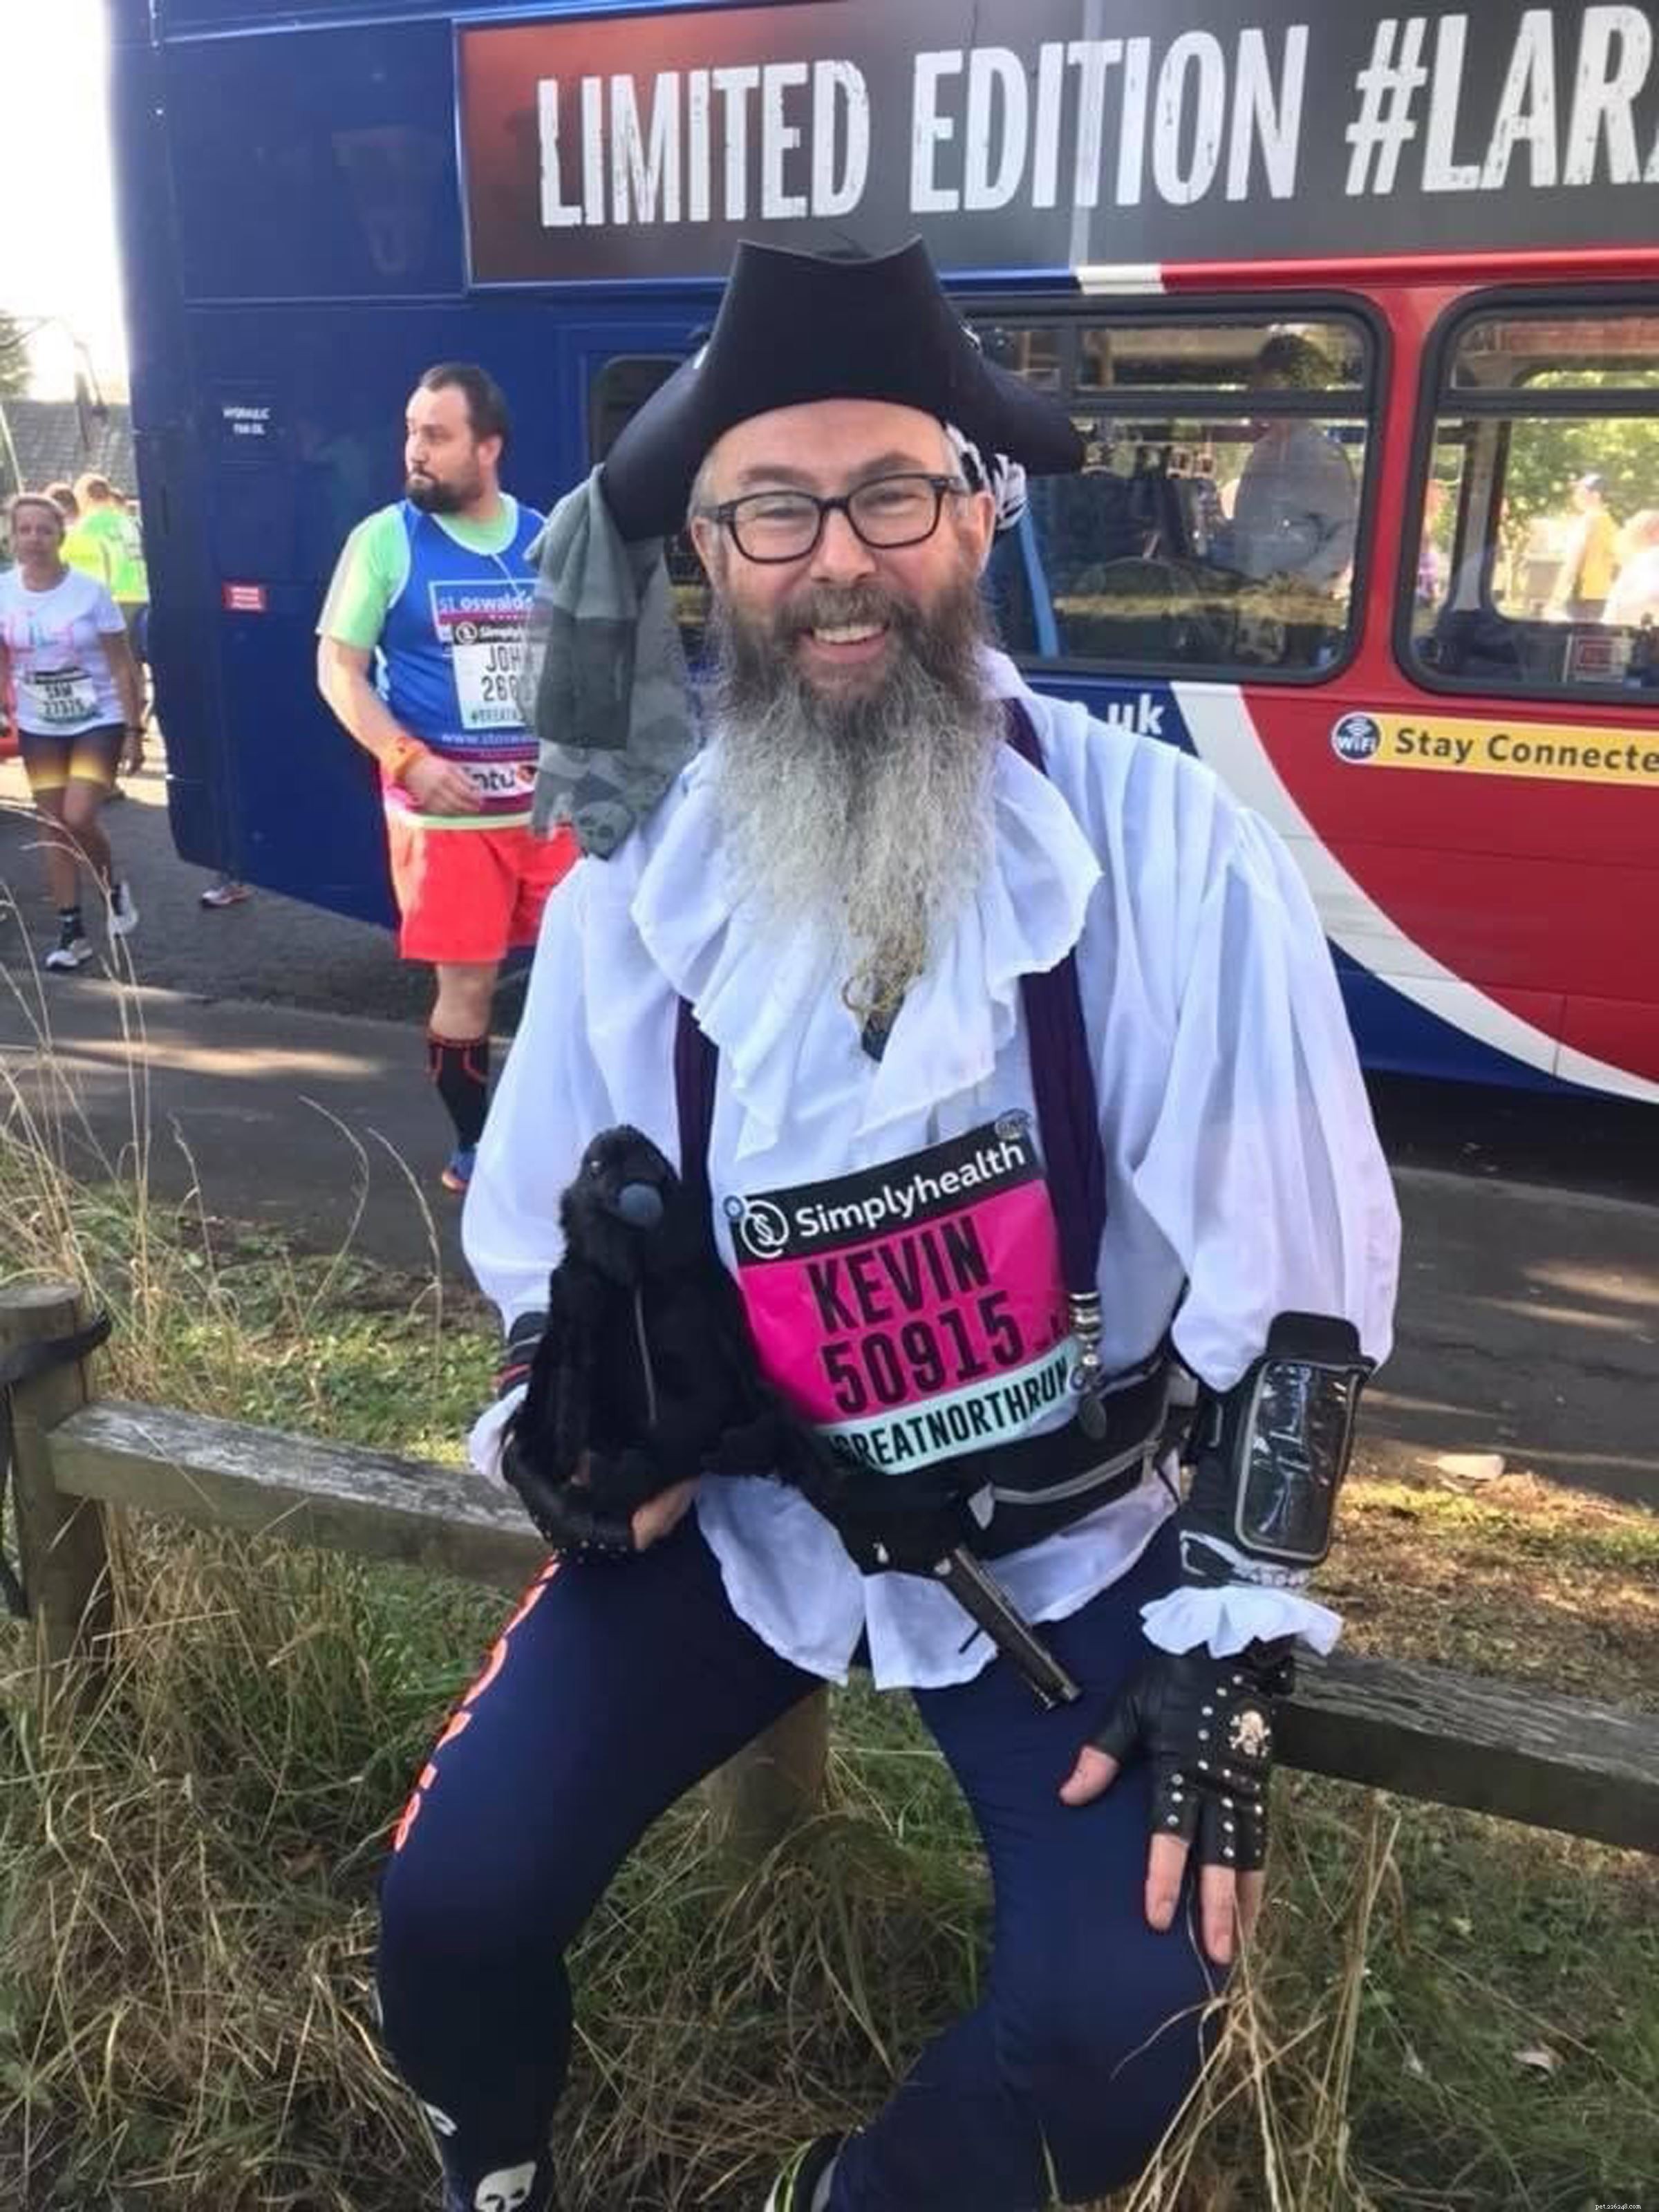 Kevin the Pirate tackar sin träning för London Marathon för att han räddade hans liv, och nu gör han allt igen för att samla in pengar till katter 